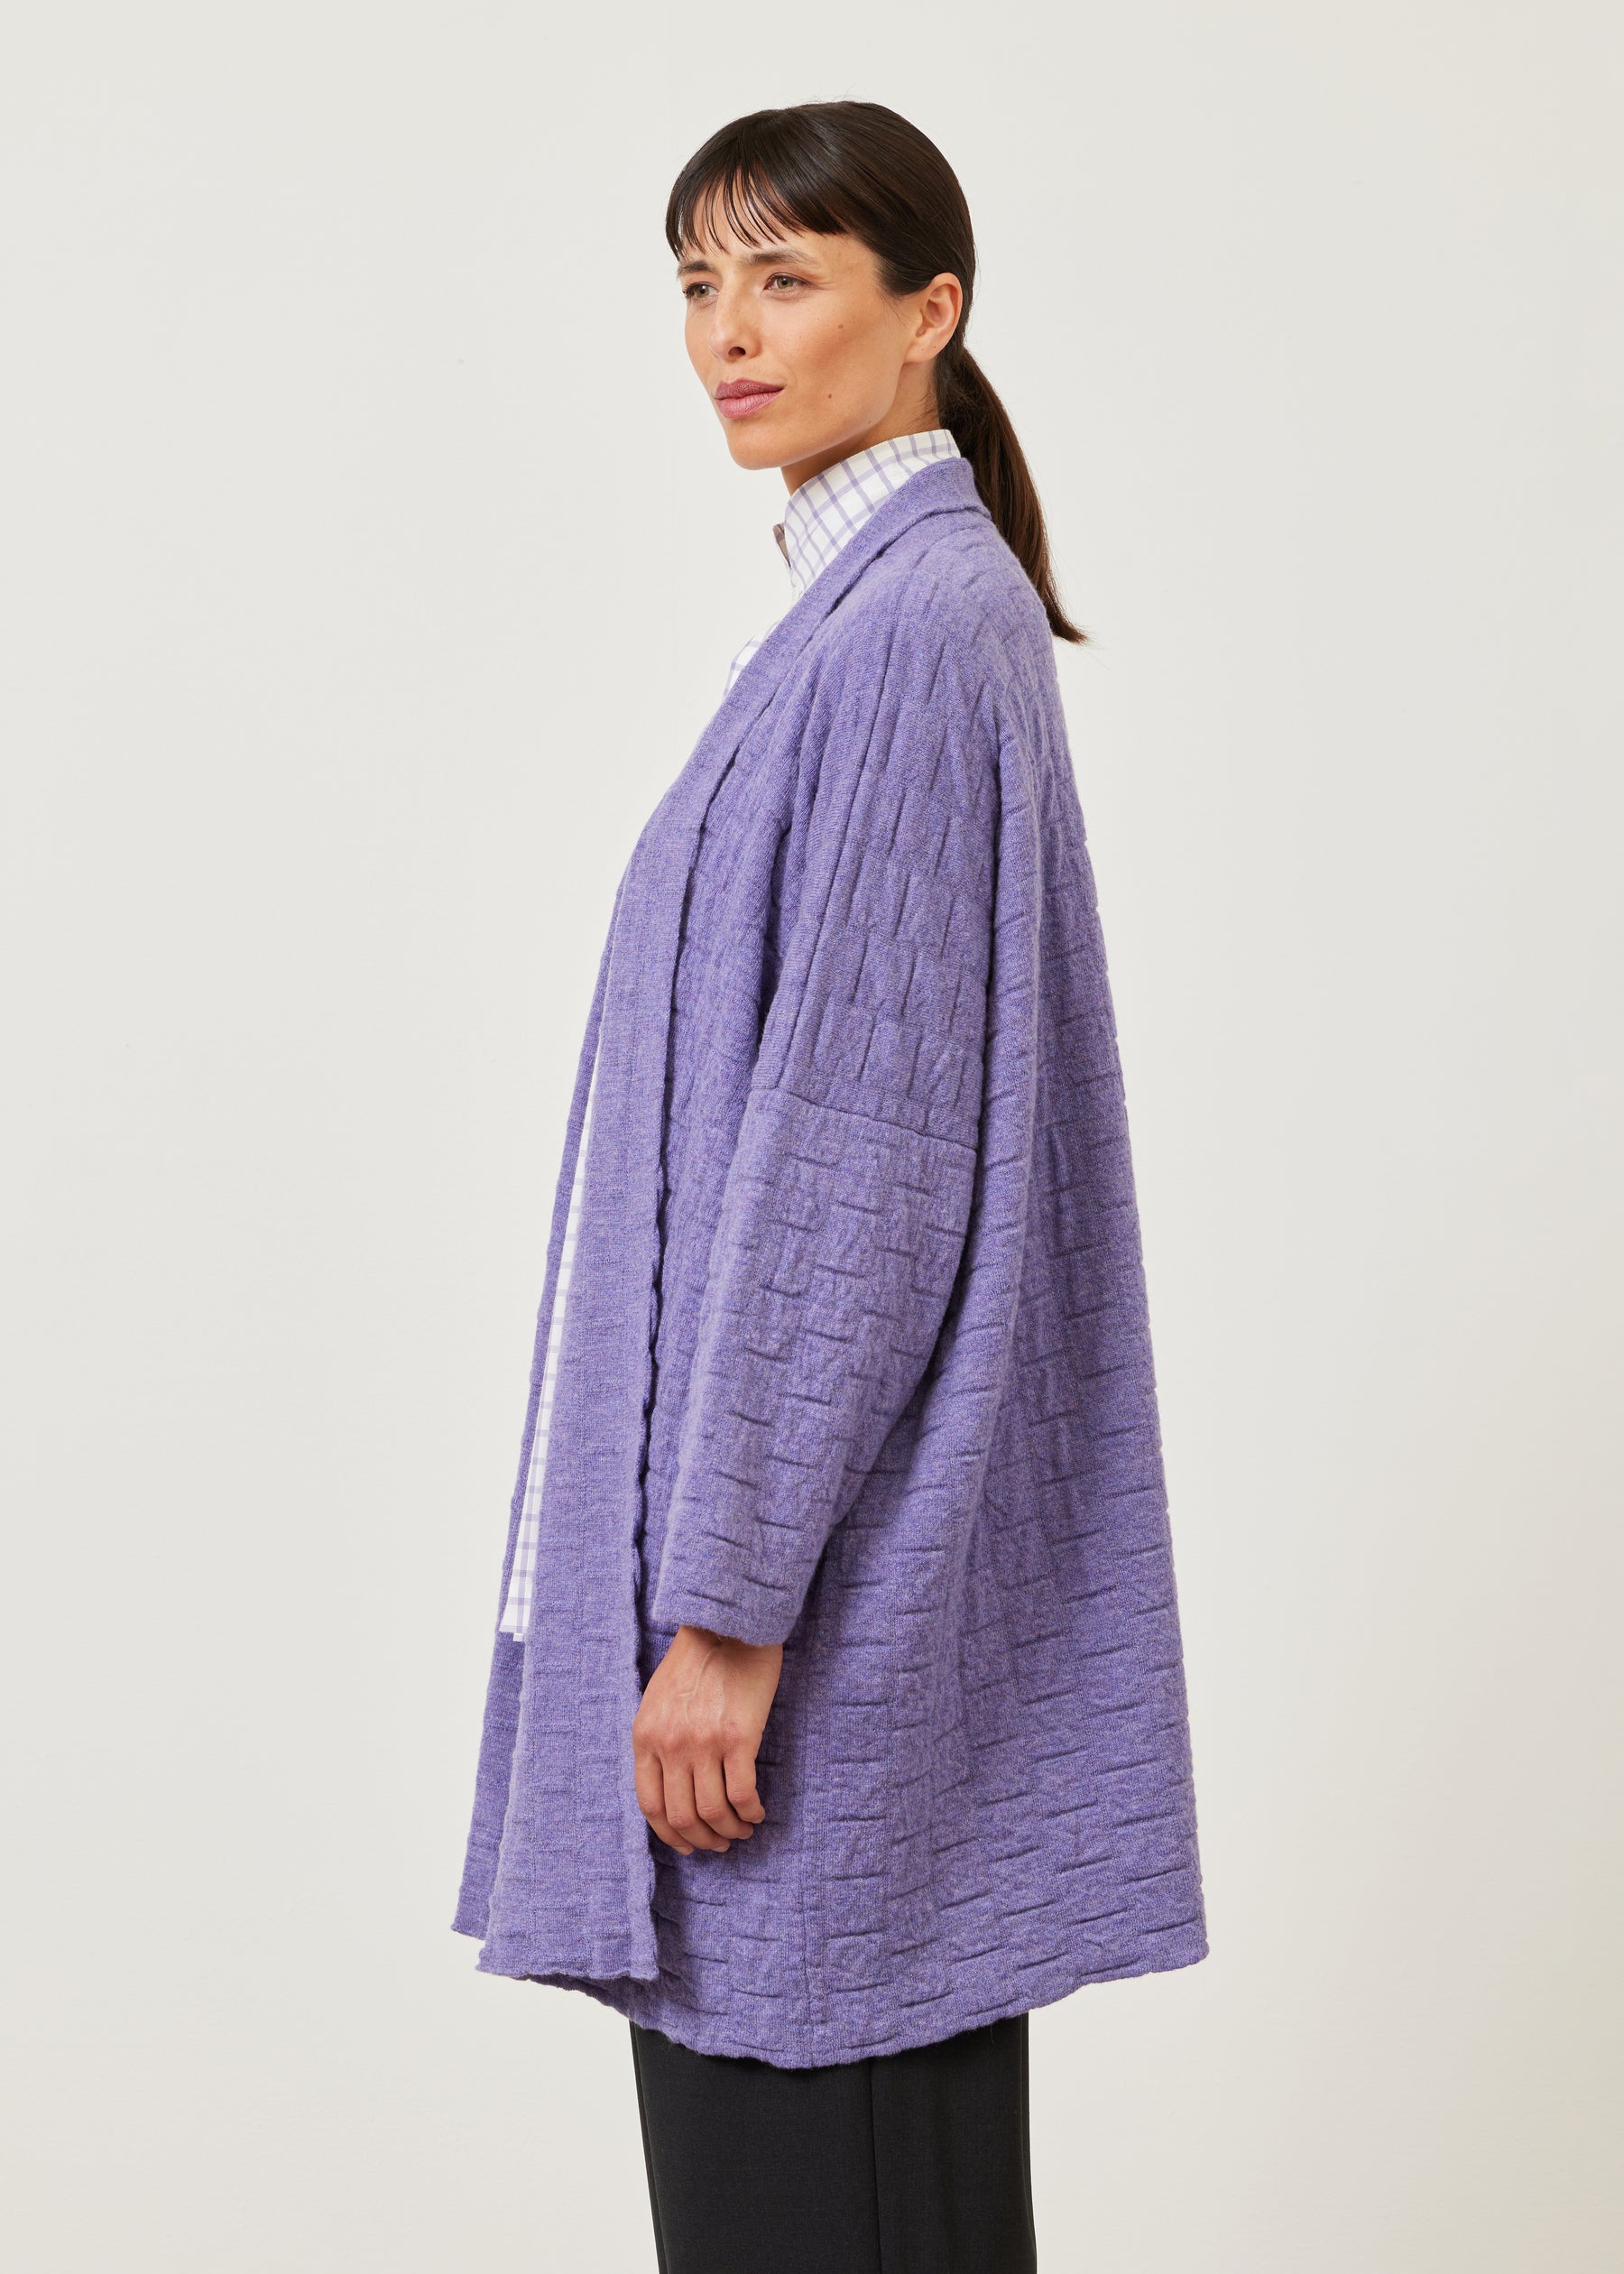 knitted scrunch shawl collar cardigan - long plus